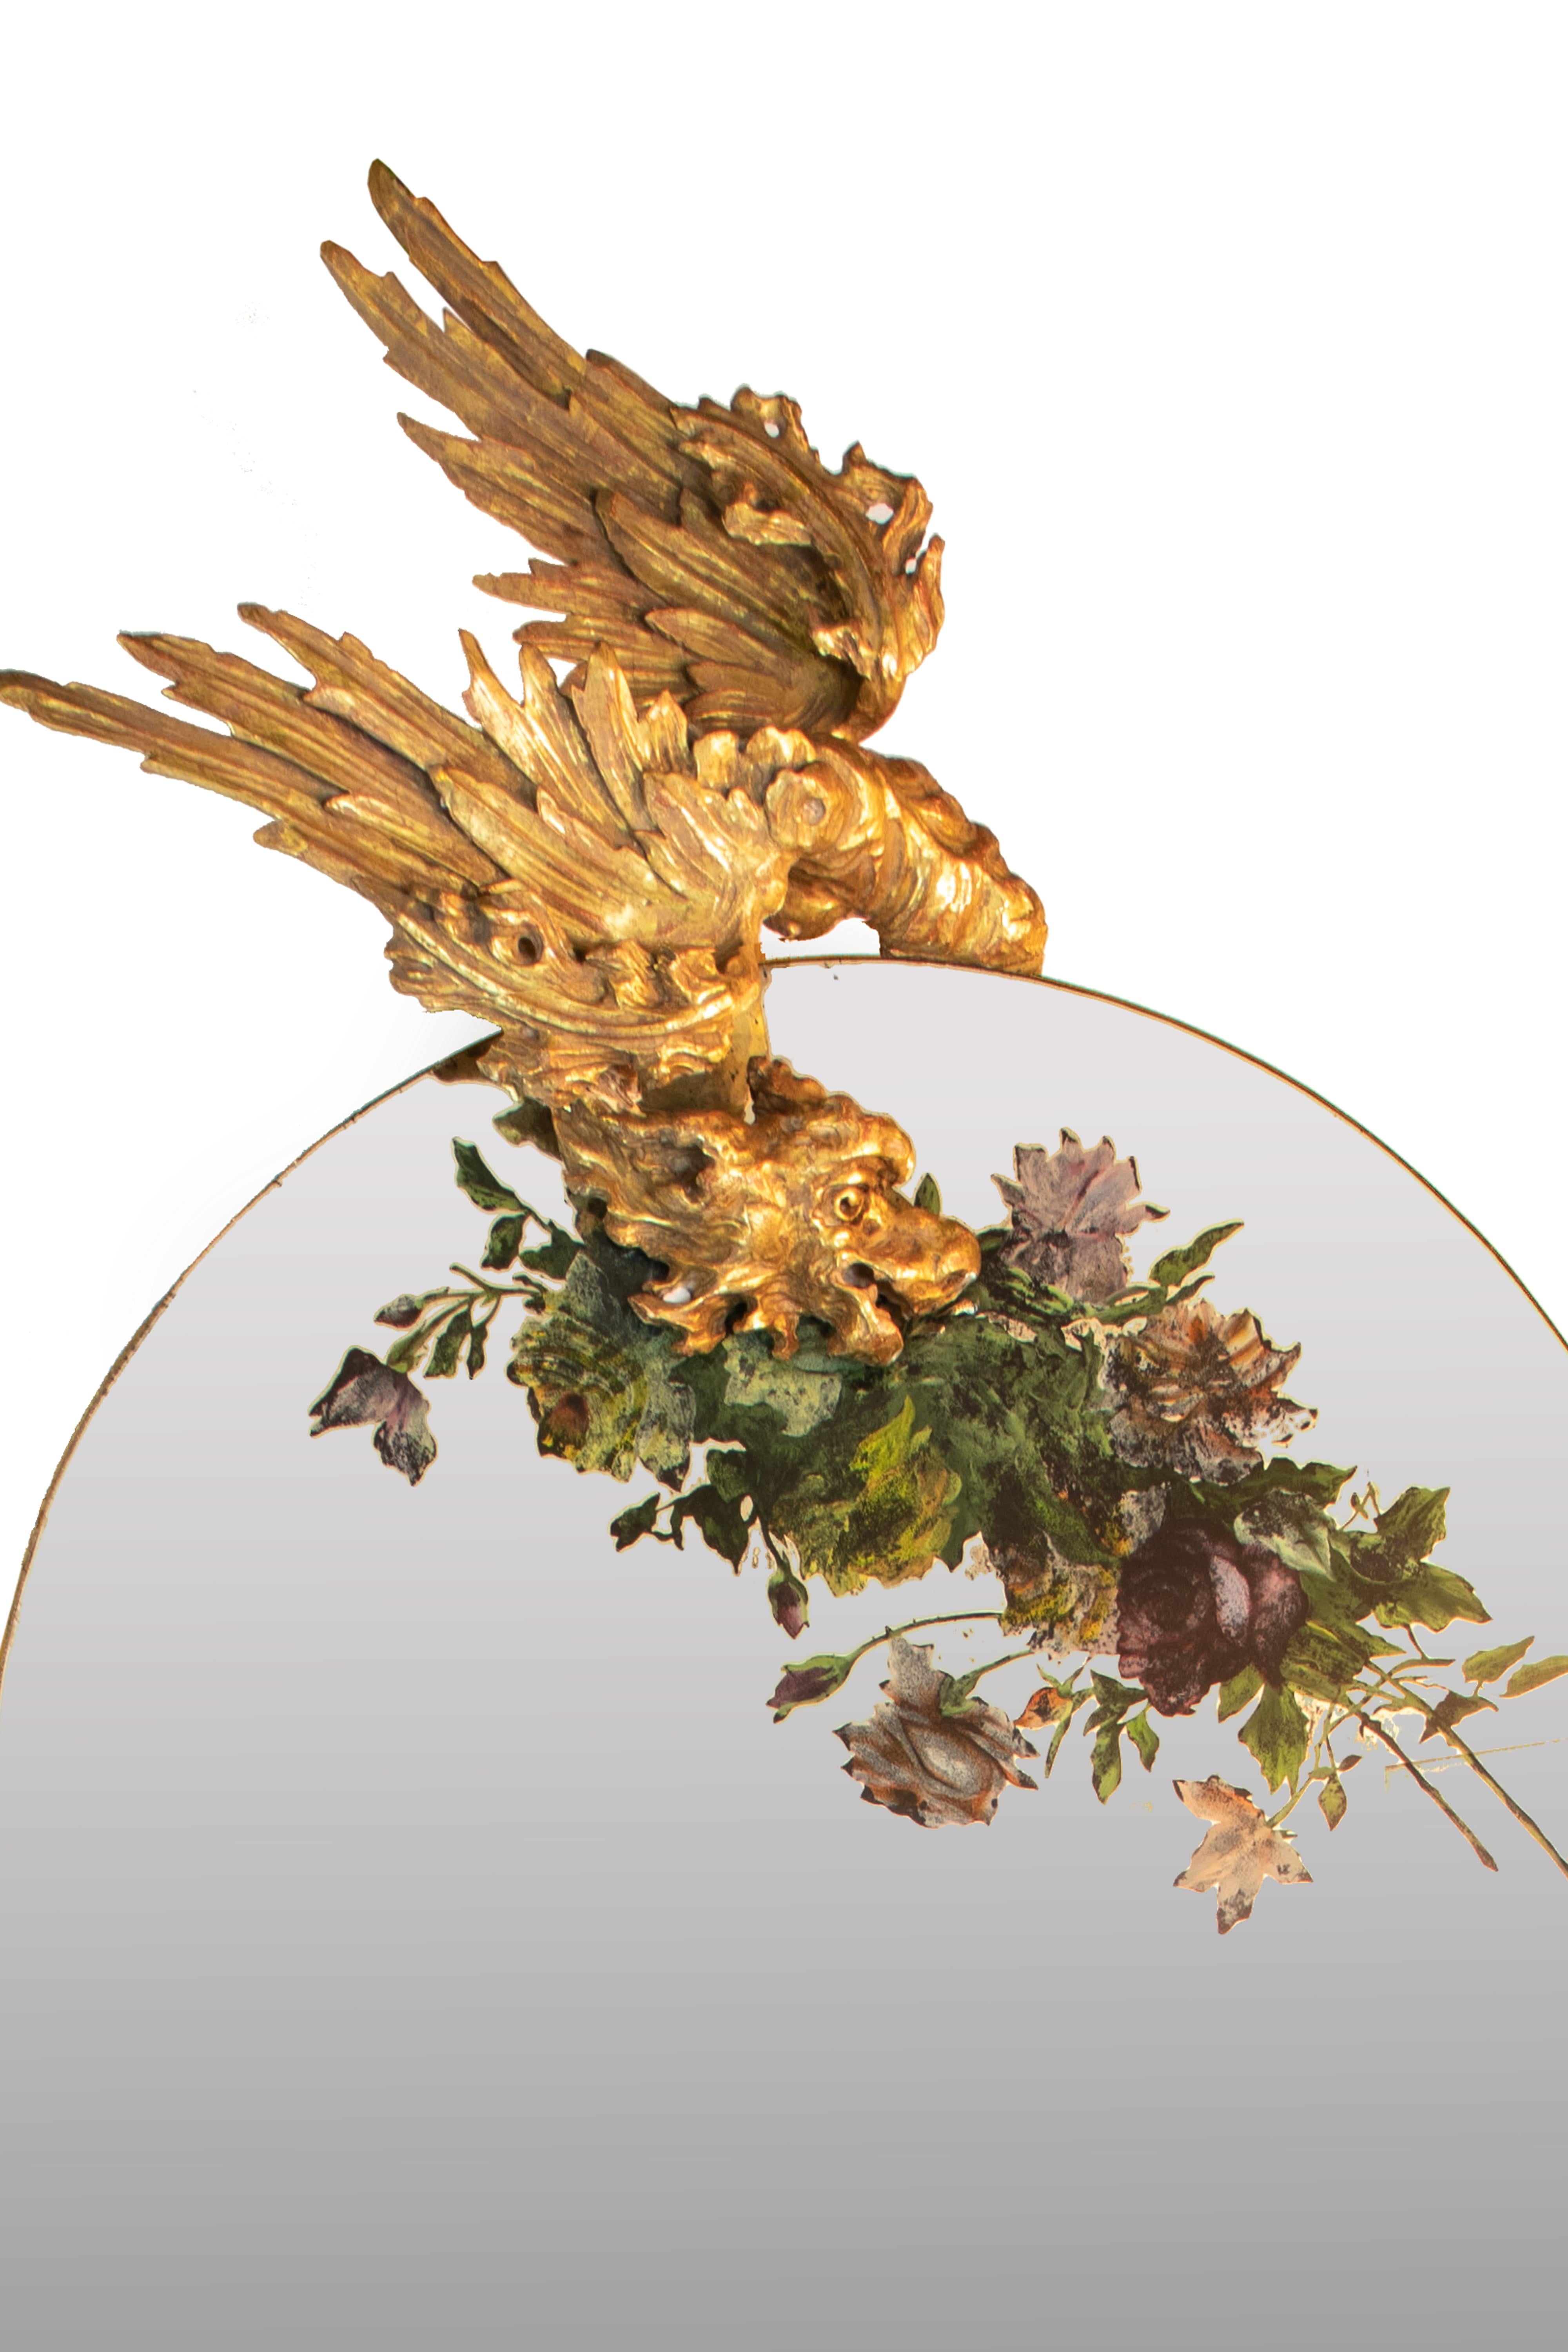 Venezianische Jardiniere aus geschnitztem Holz, vergoldet, mit einem großen, bogenförmigen Spiegel, der auf der Oberseite eine florale Komposition aus Verre églomisé (Hinterglasmalerei) zeigt, Ende 19. Der Rahmen ist mit Kranichfiguren, Blumen und